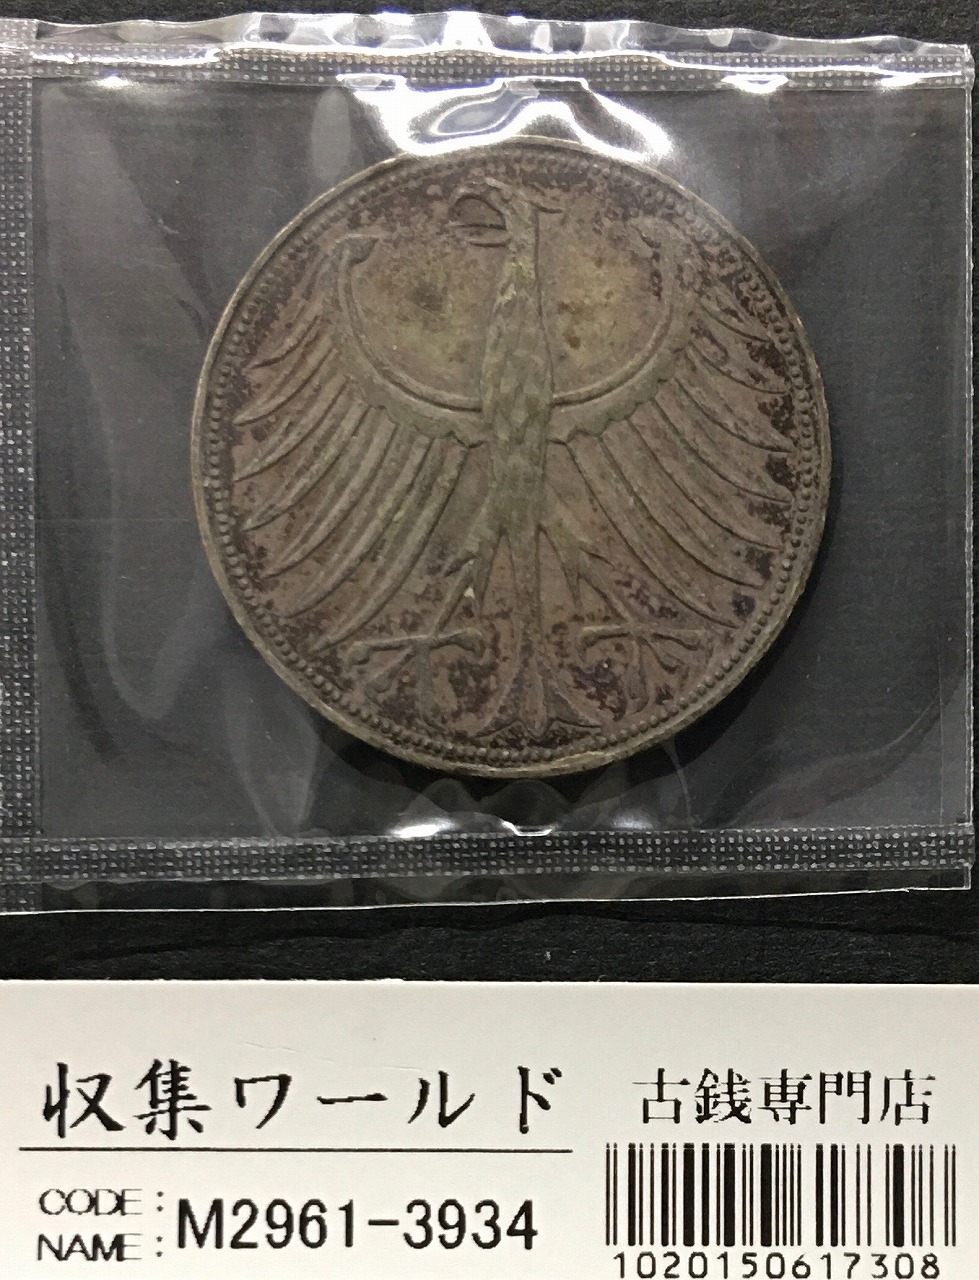 ドイツ 5マルク銀貨 1965年銘 国章/鷲(わし) ミント仕様 量目11.2g/黒トーン 極美品